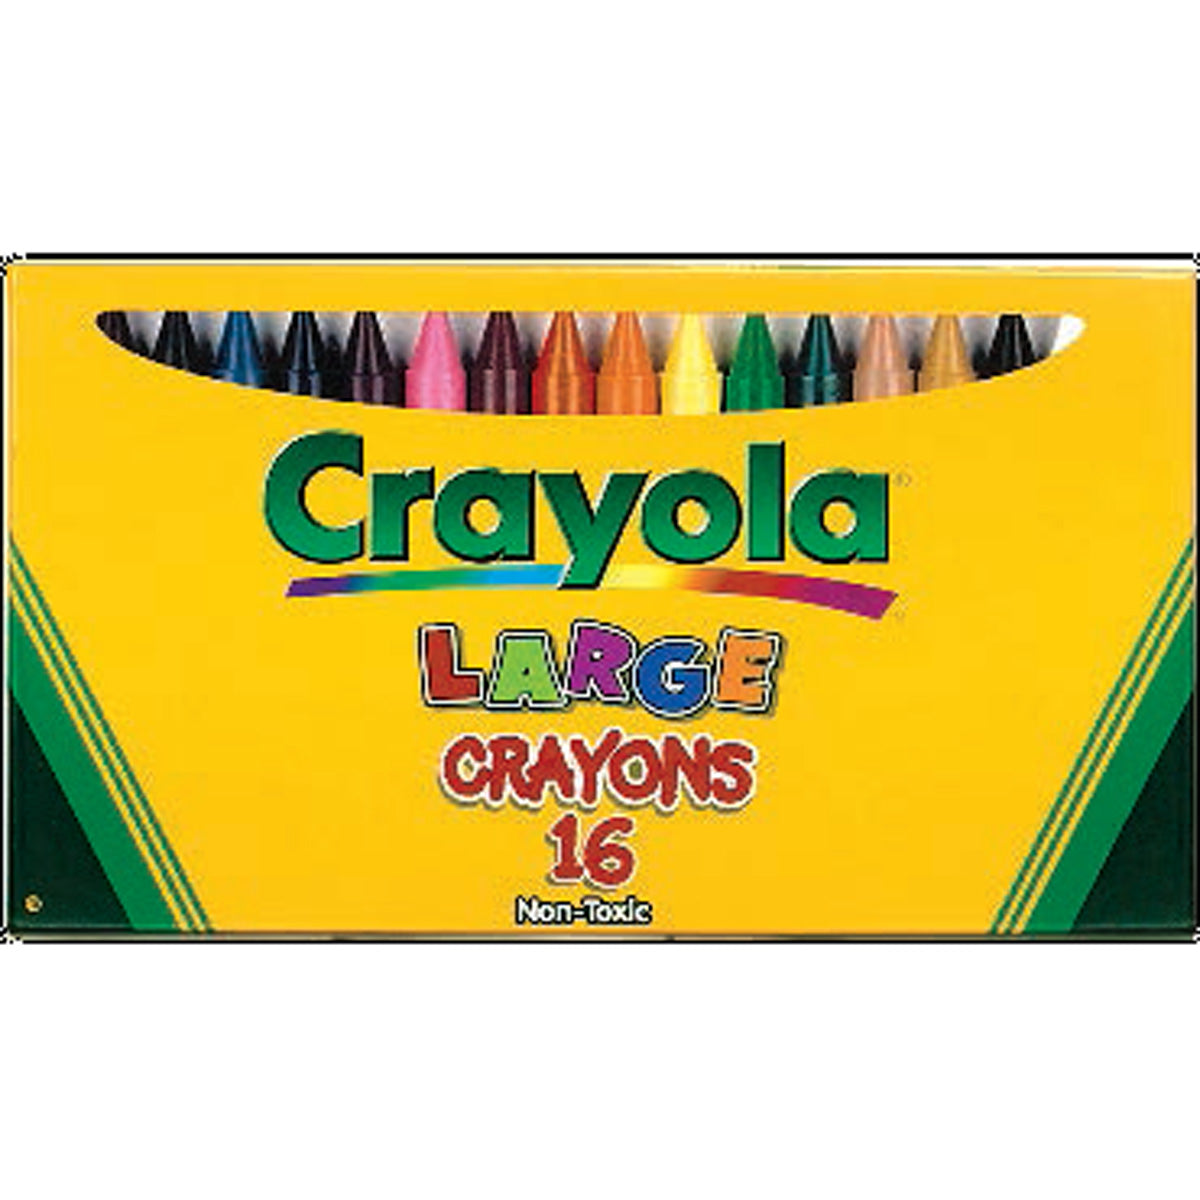 Crayola 16 ct. Large Crayons - Lift Lid Box